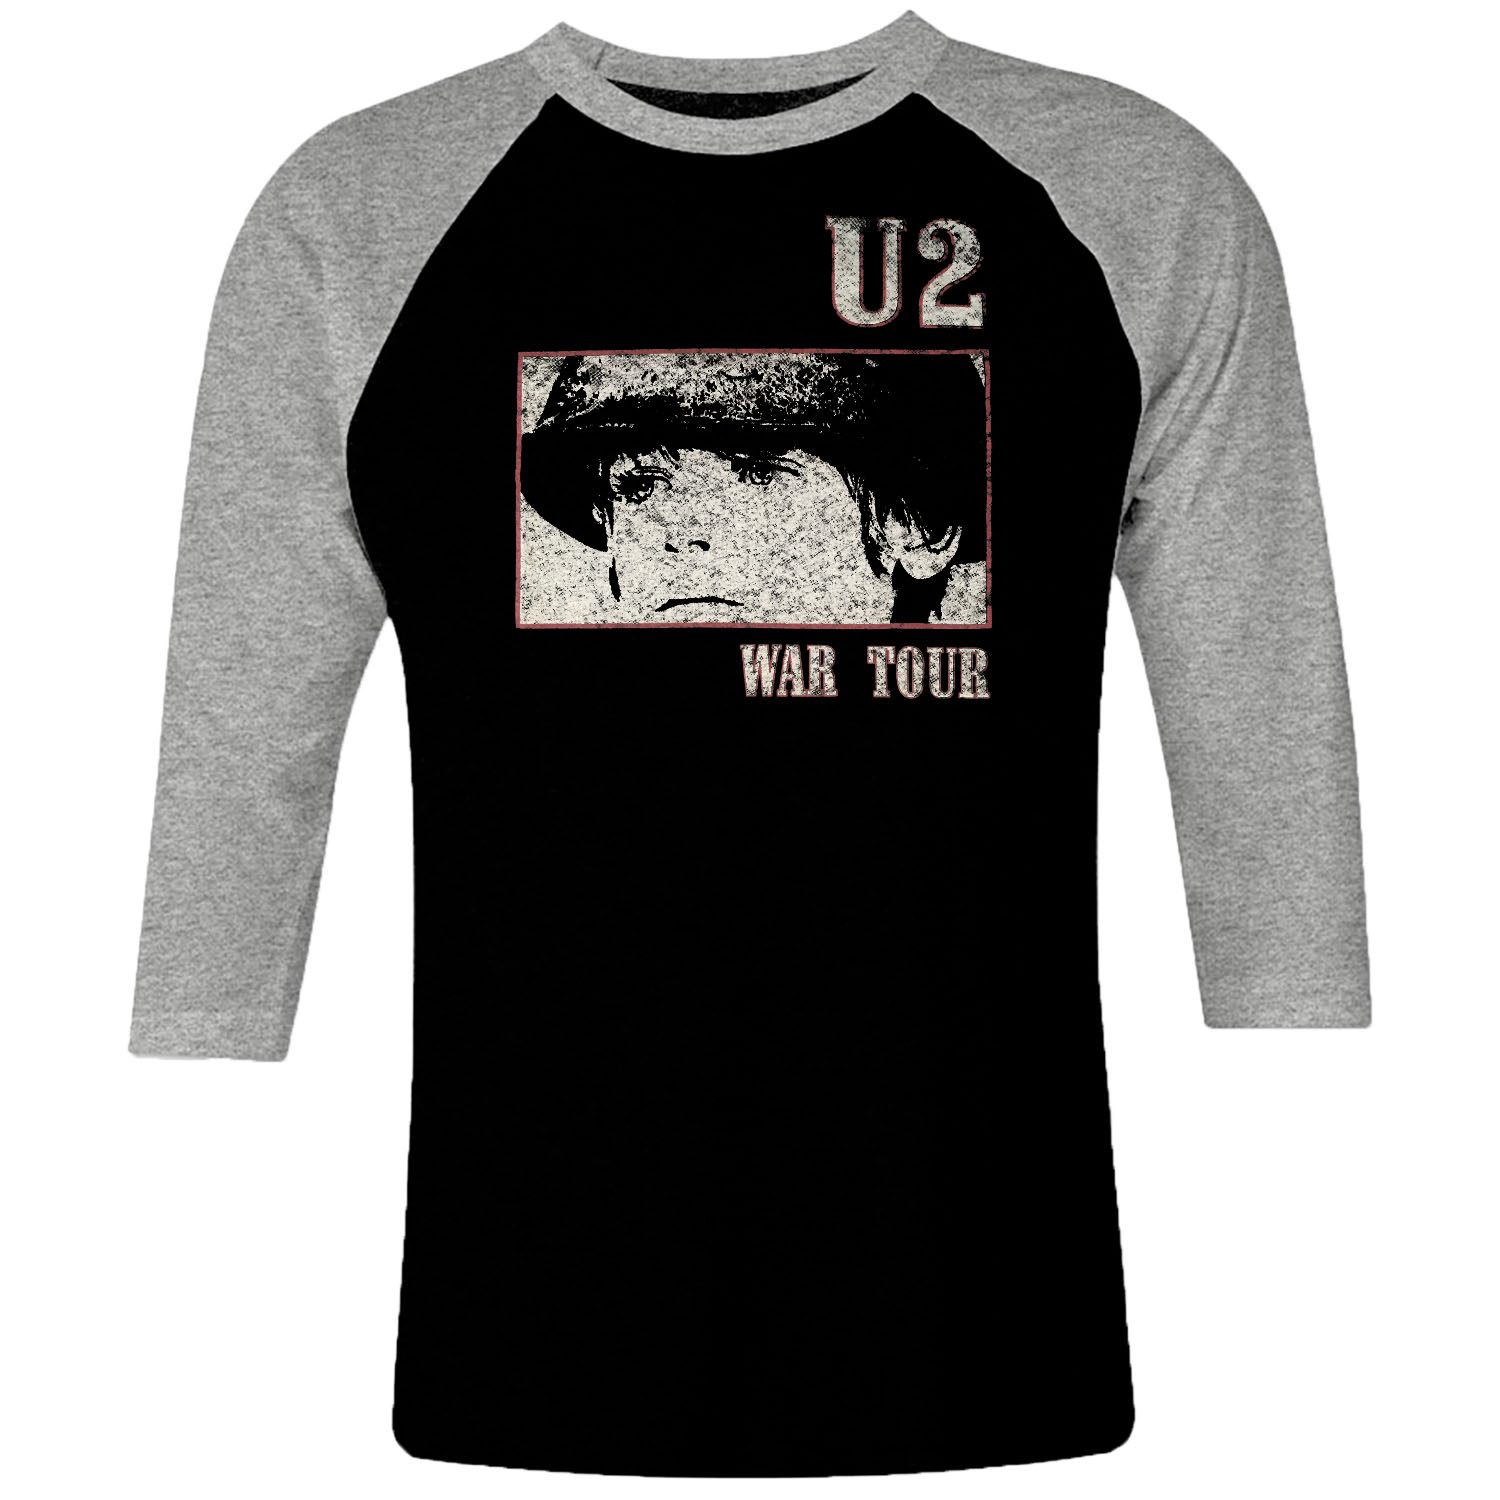 U2 raglan t-shirt 3/4 sleeve 80s War book Irish band